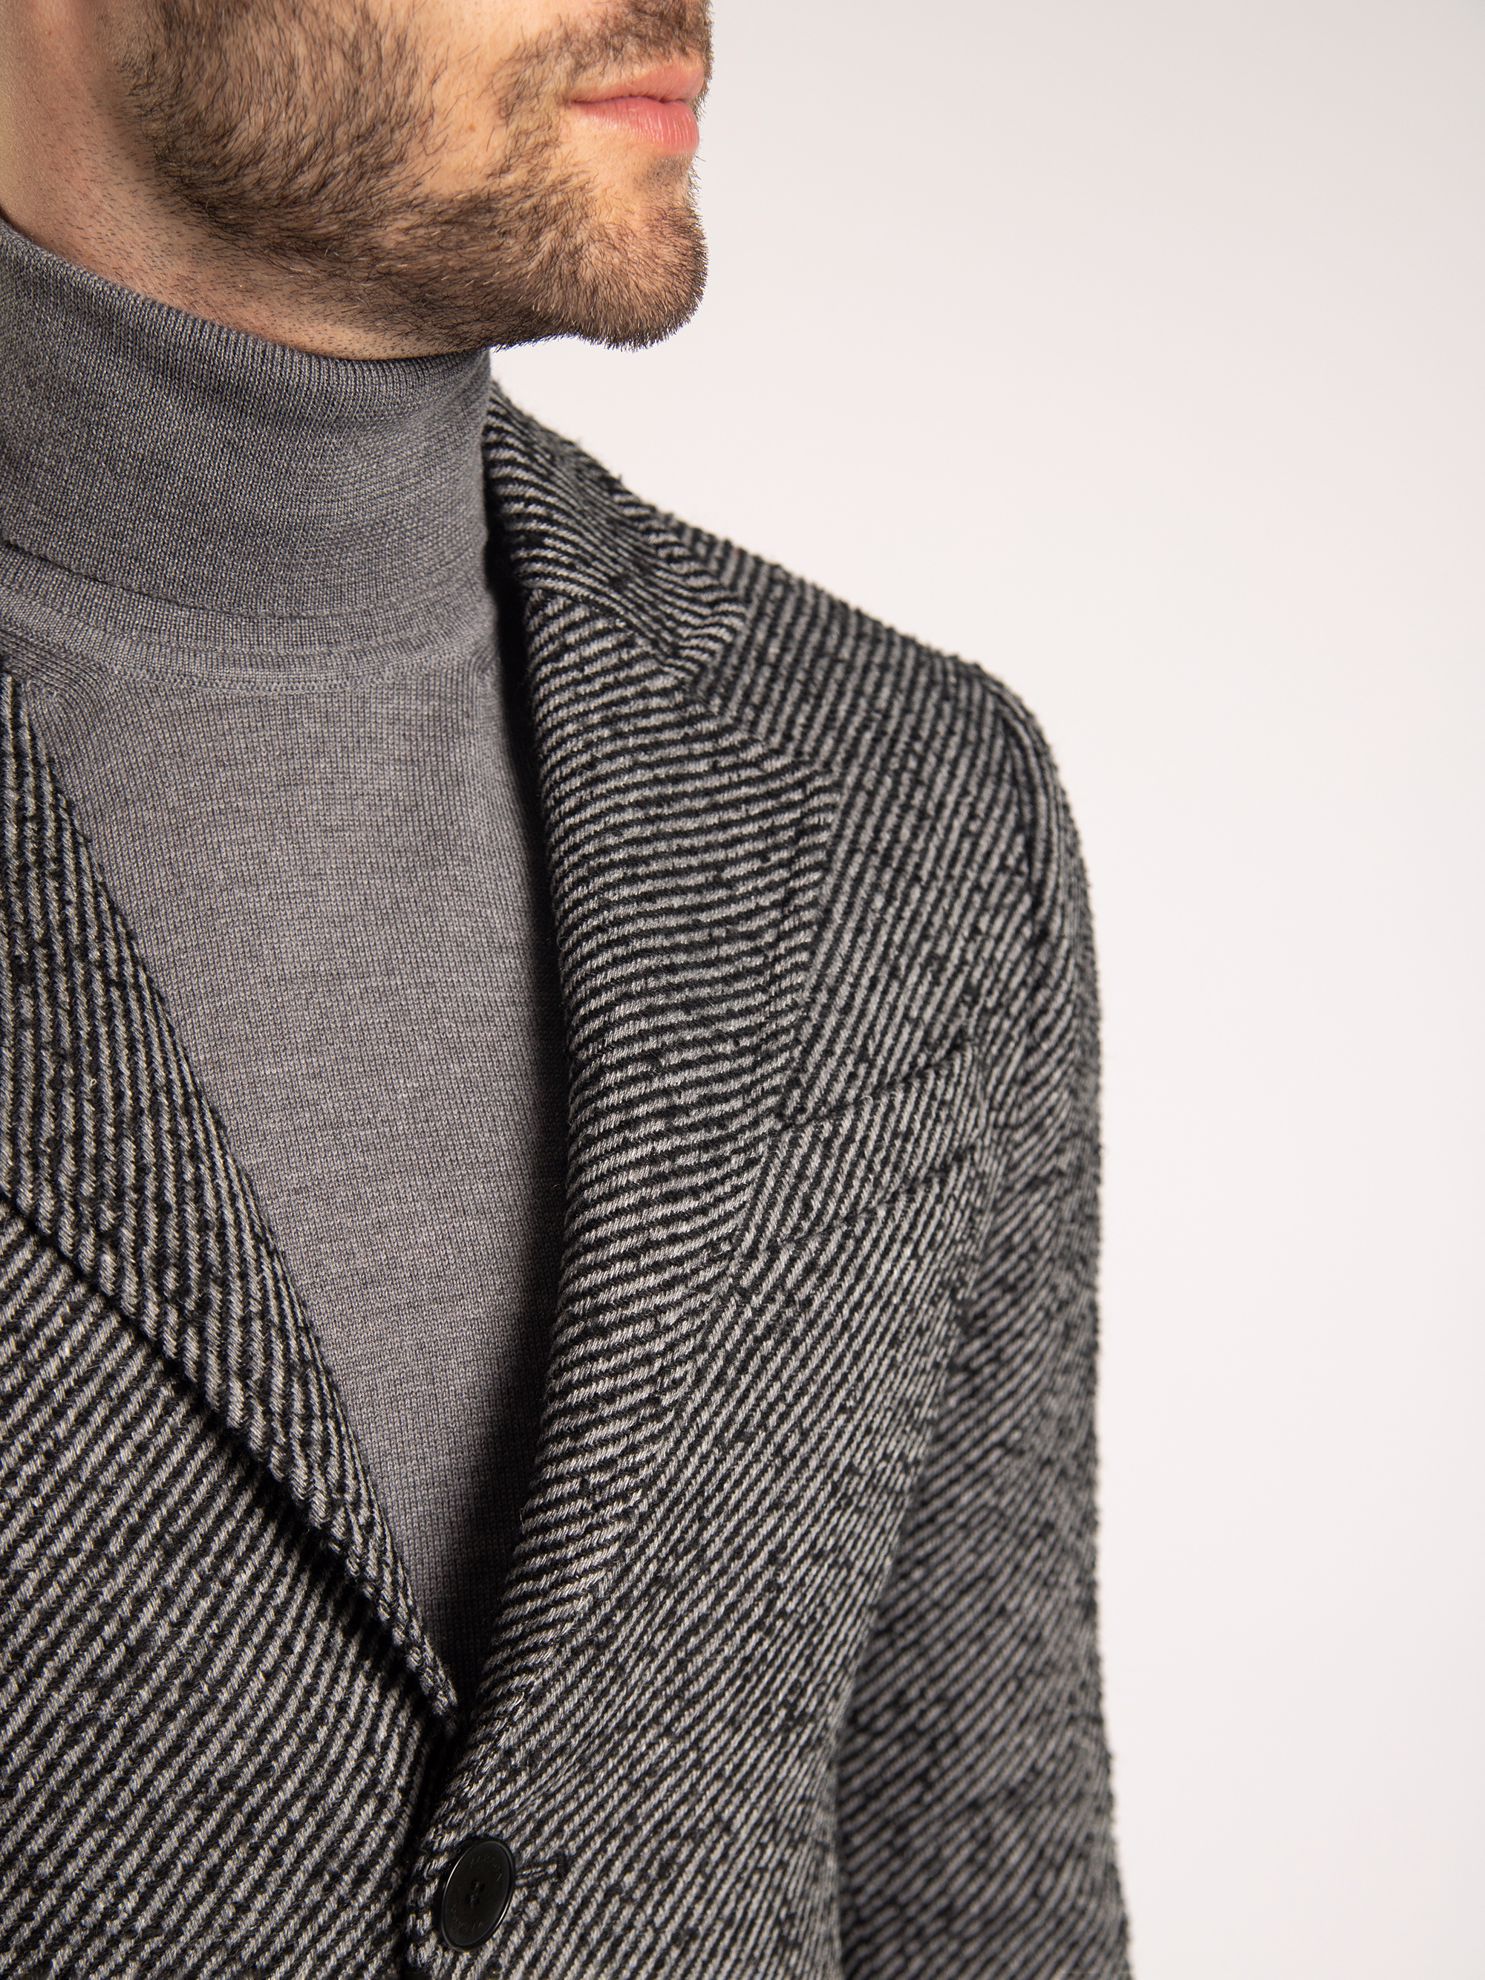 Karaca Erkek Palto-Siyah. ürün görseli